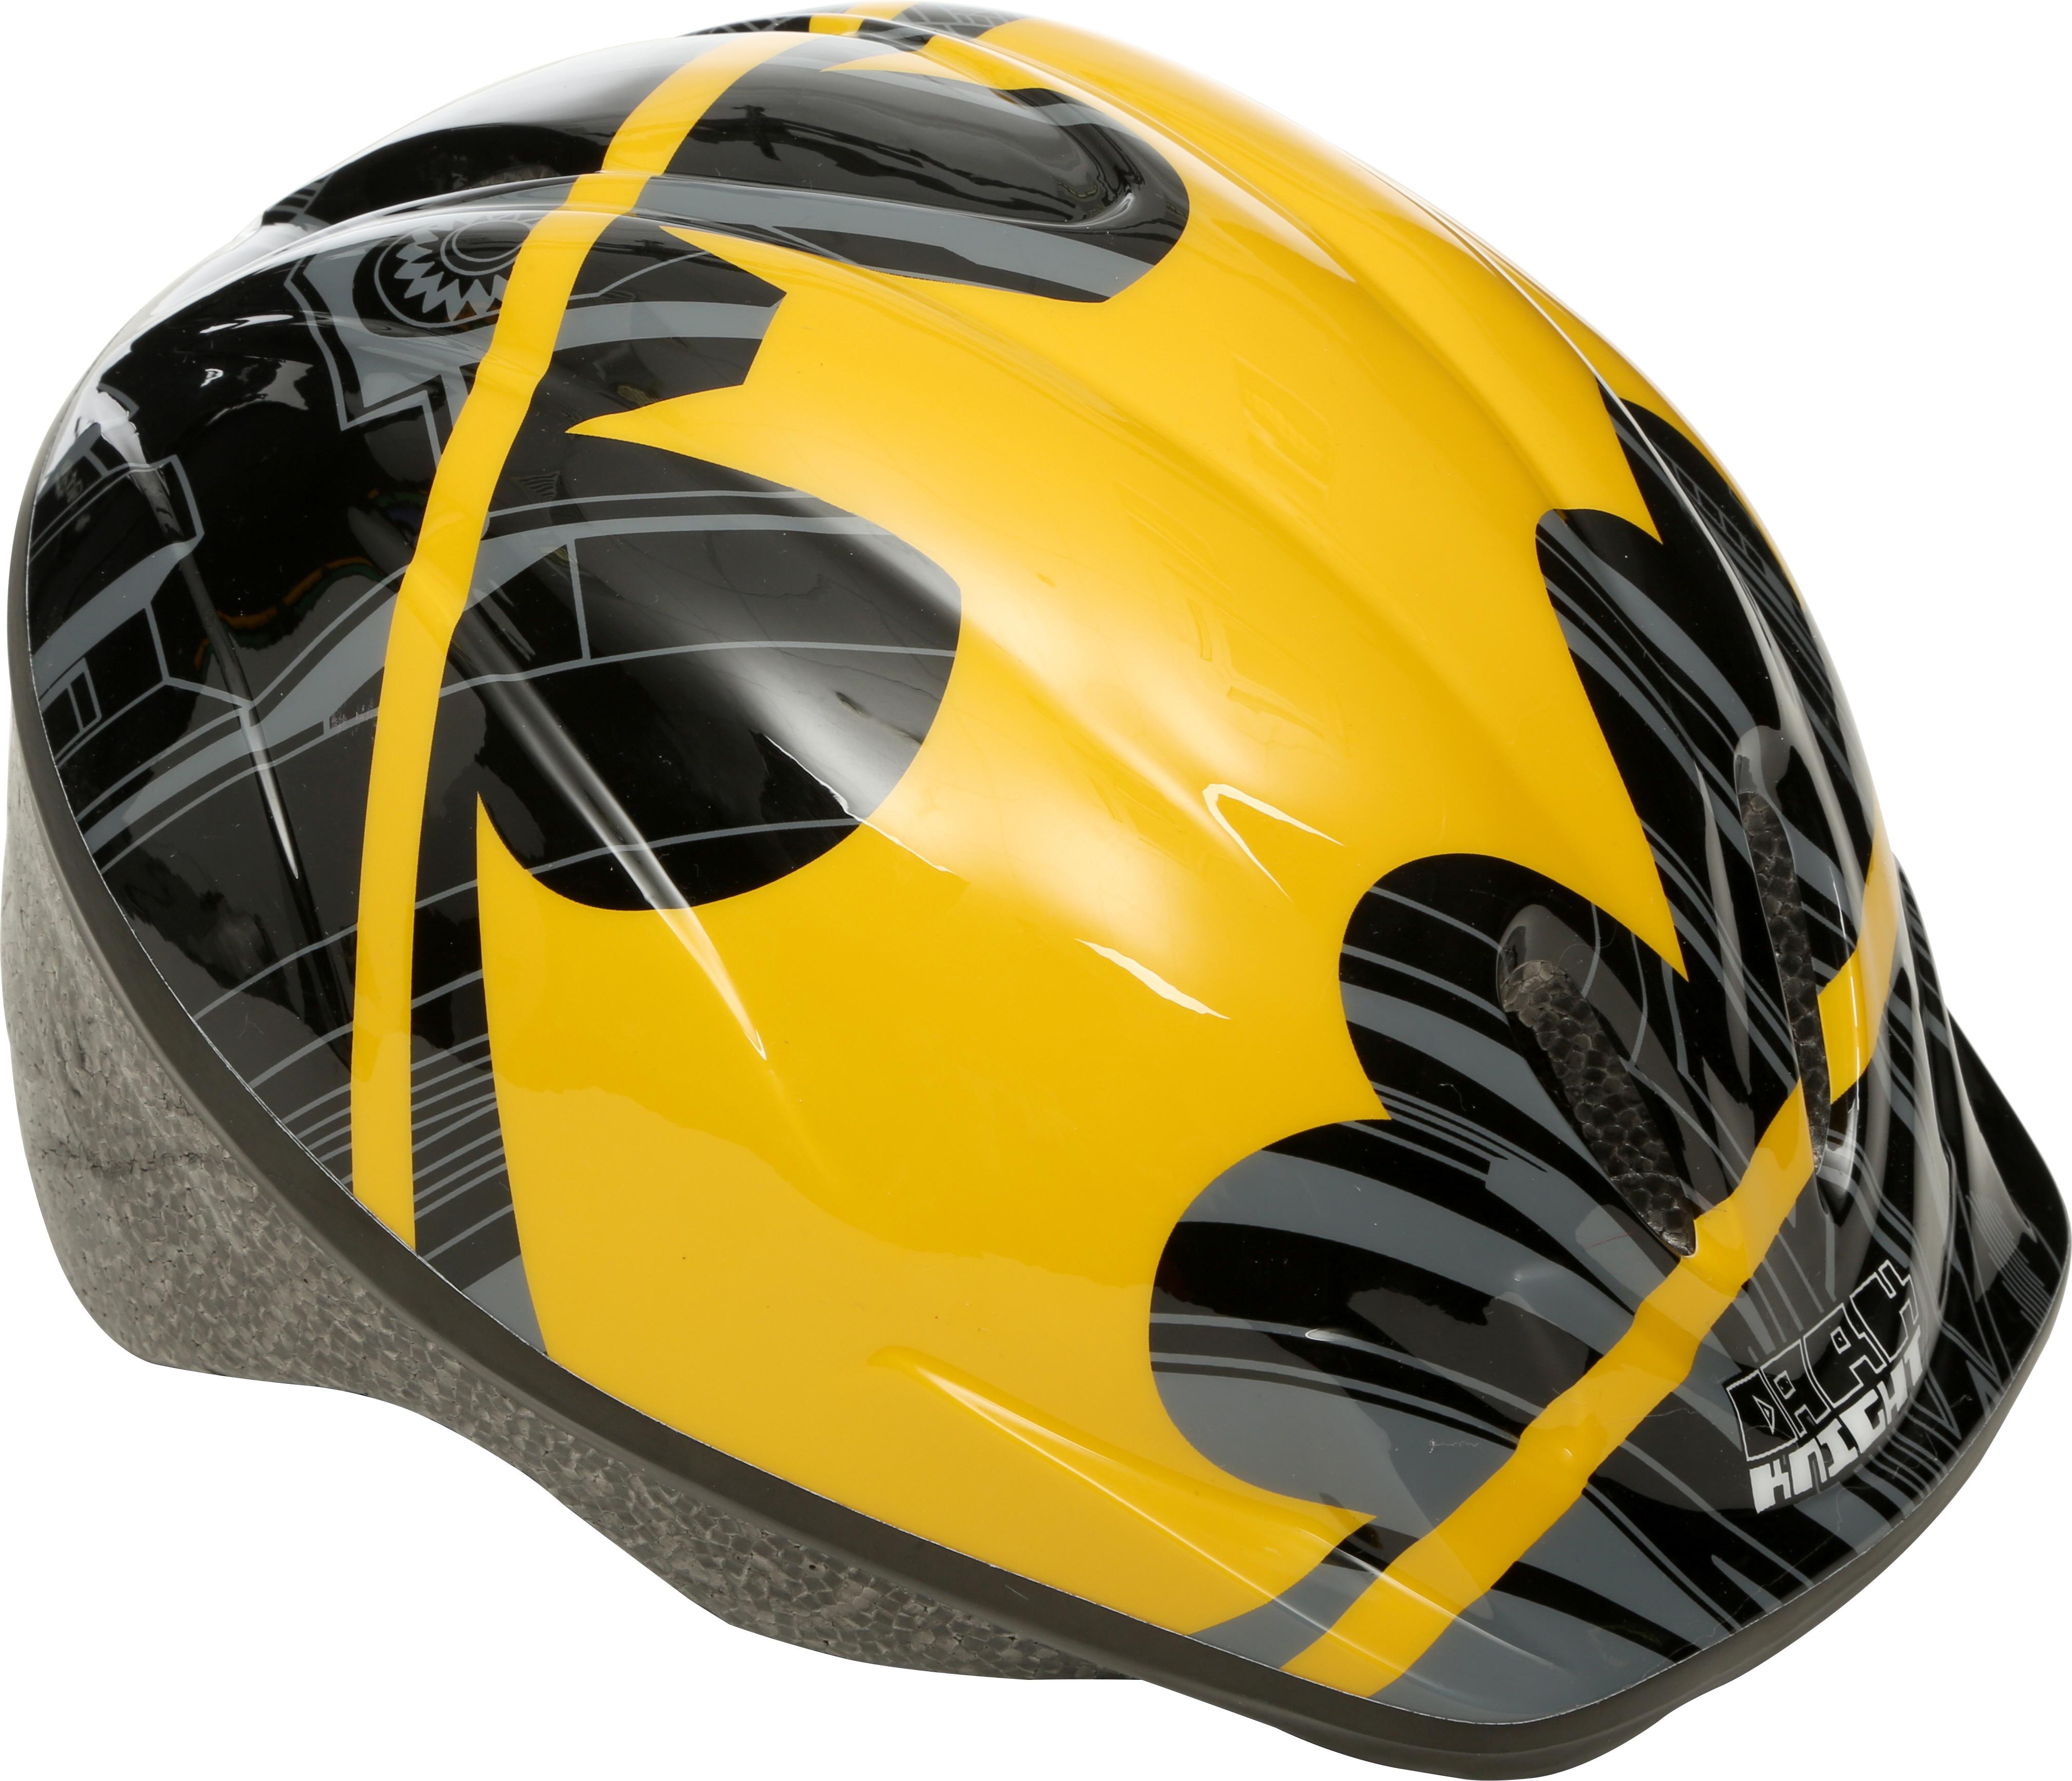 Batman Kids Bike Helmet (52-56Cm)